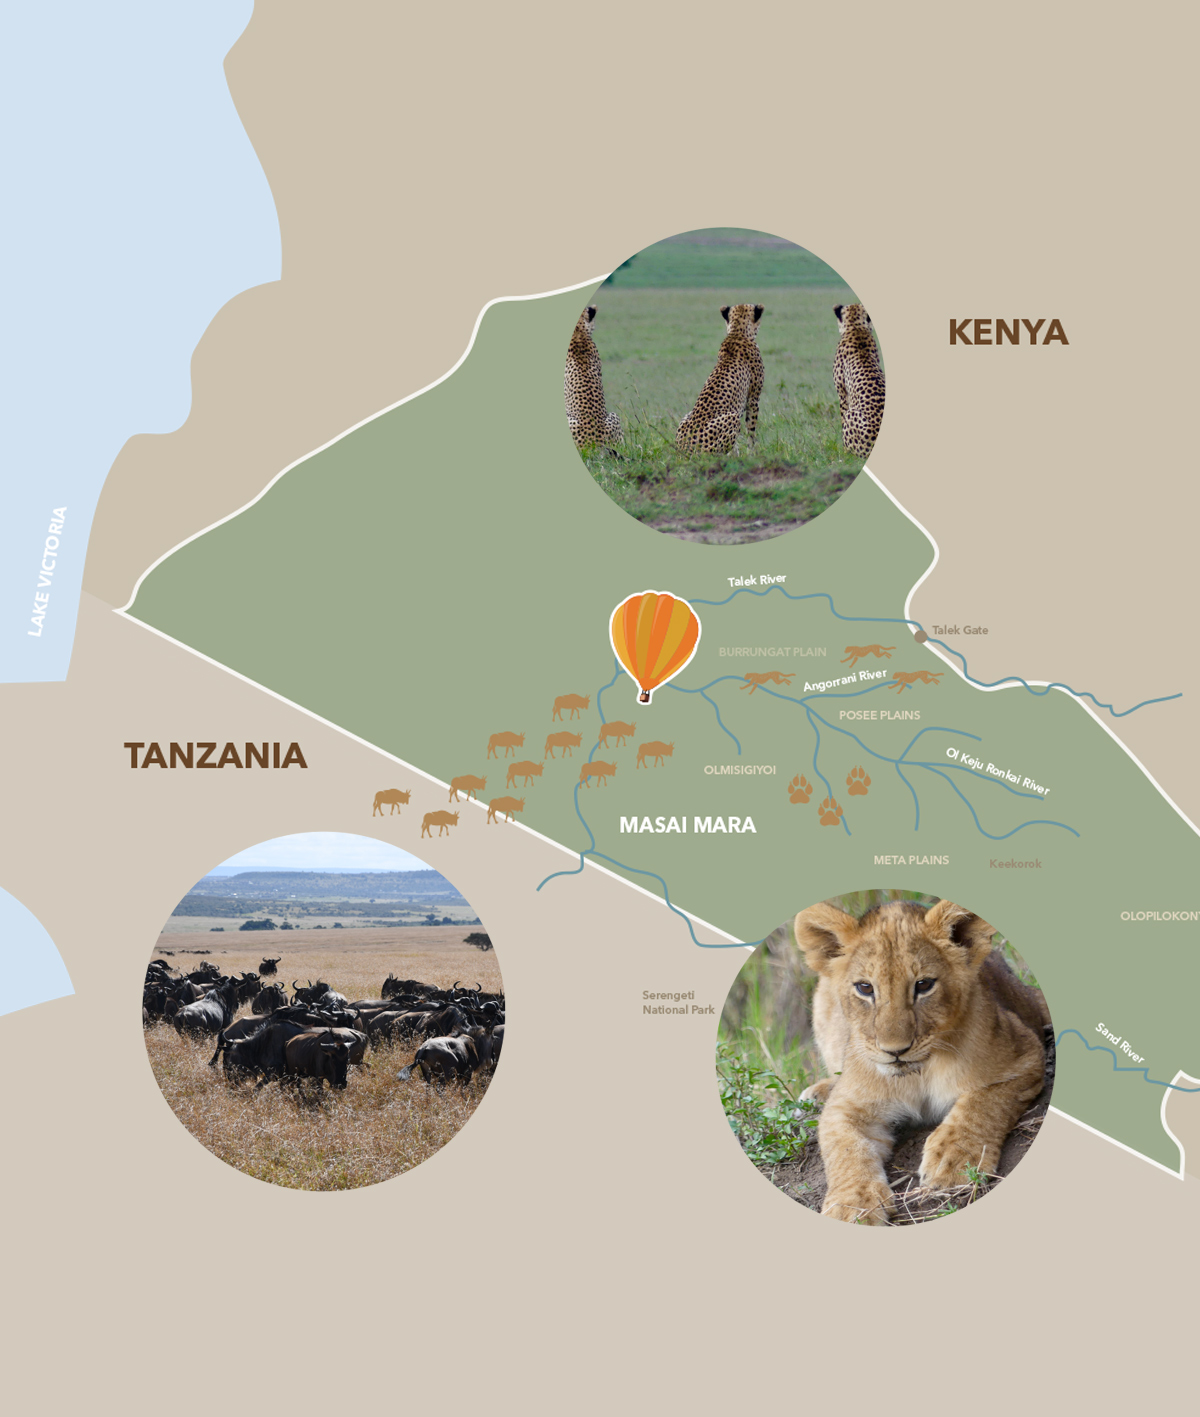 safari companies in nairobi kenya